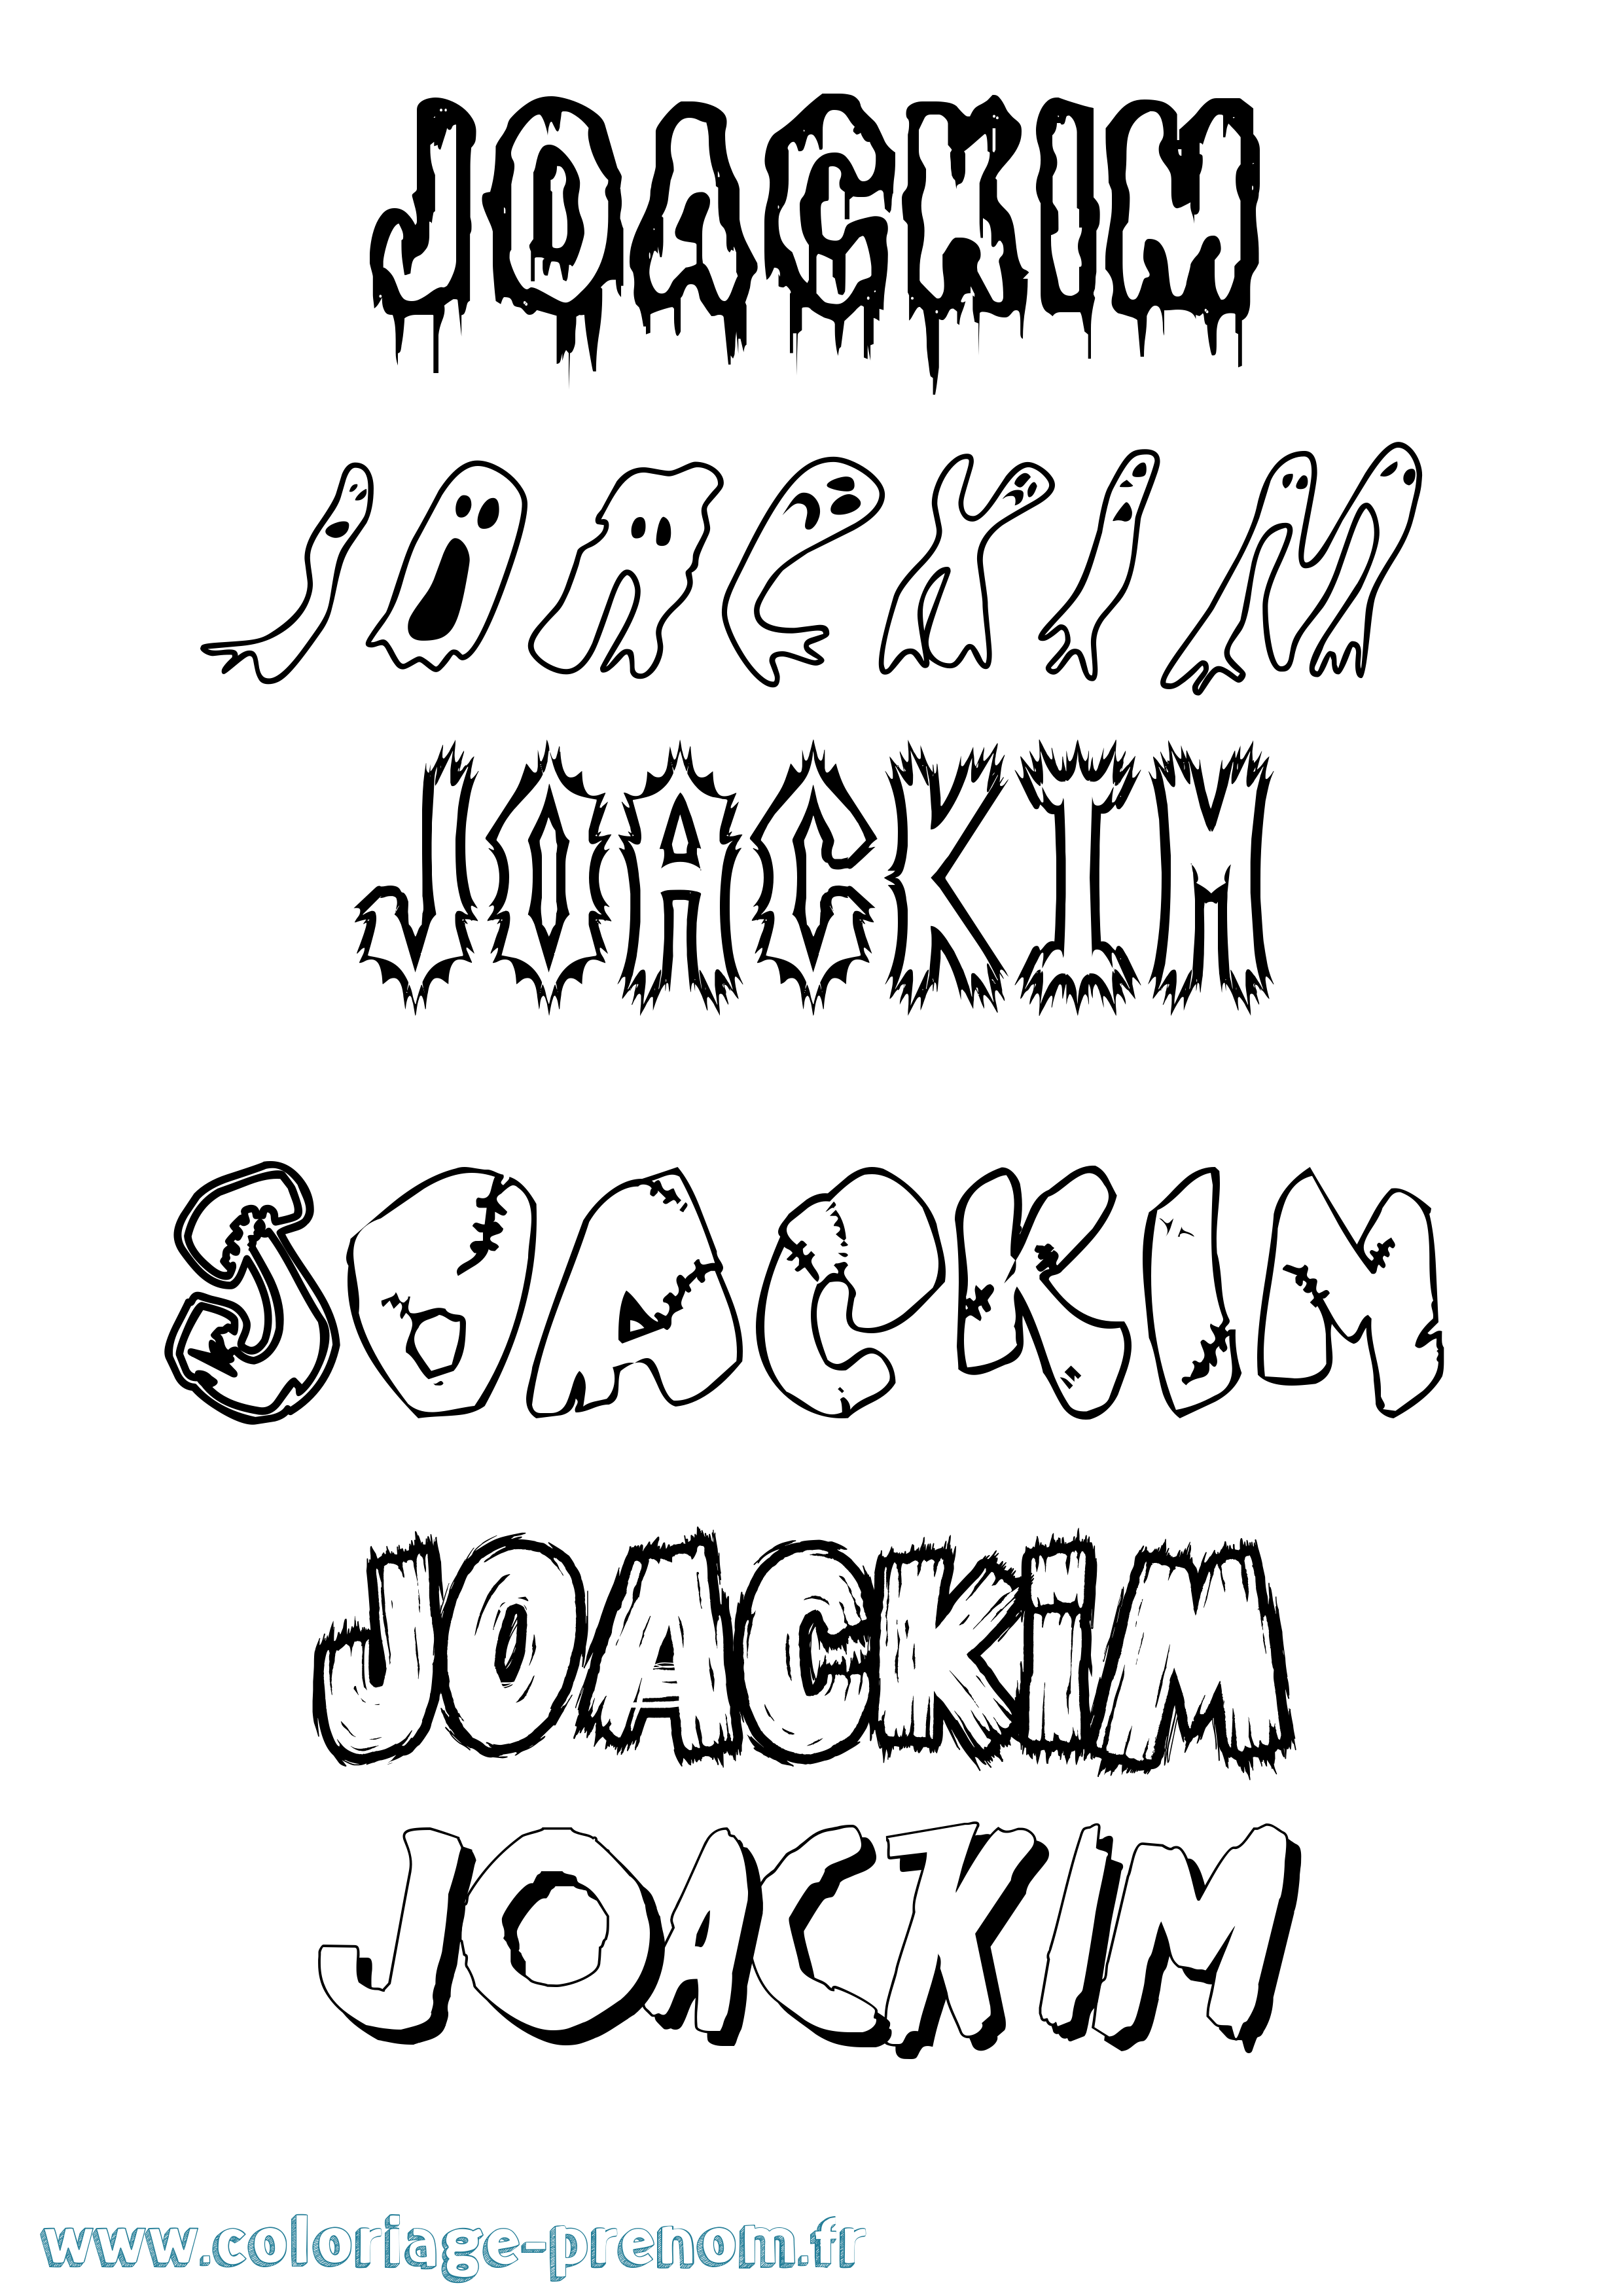 Coloriage prénom Joackim Frisson